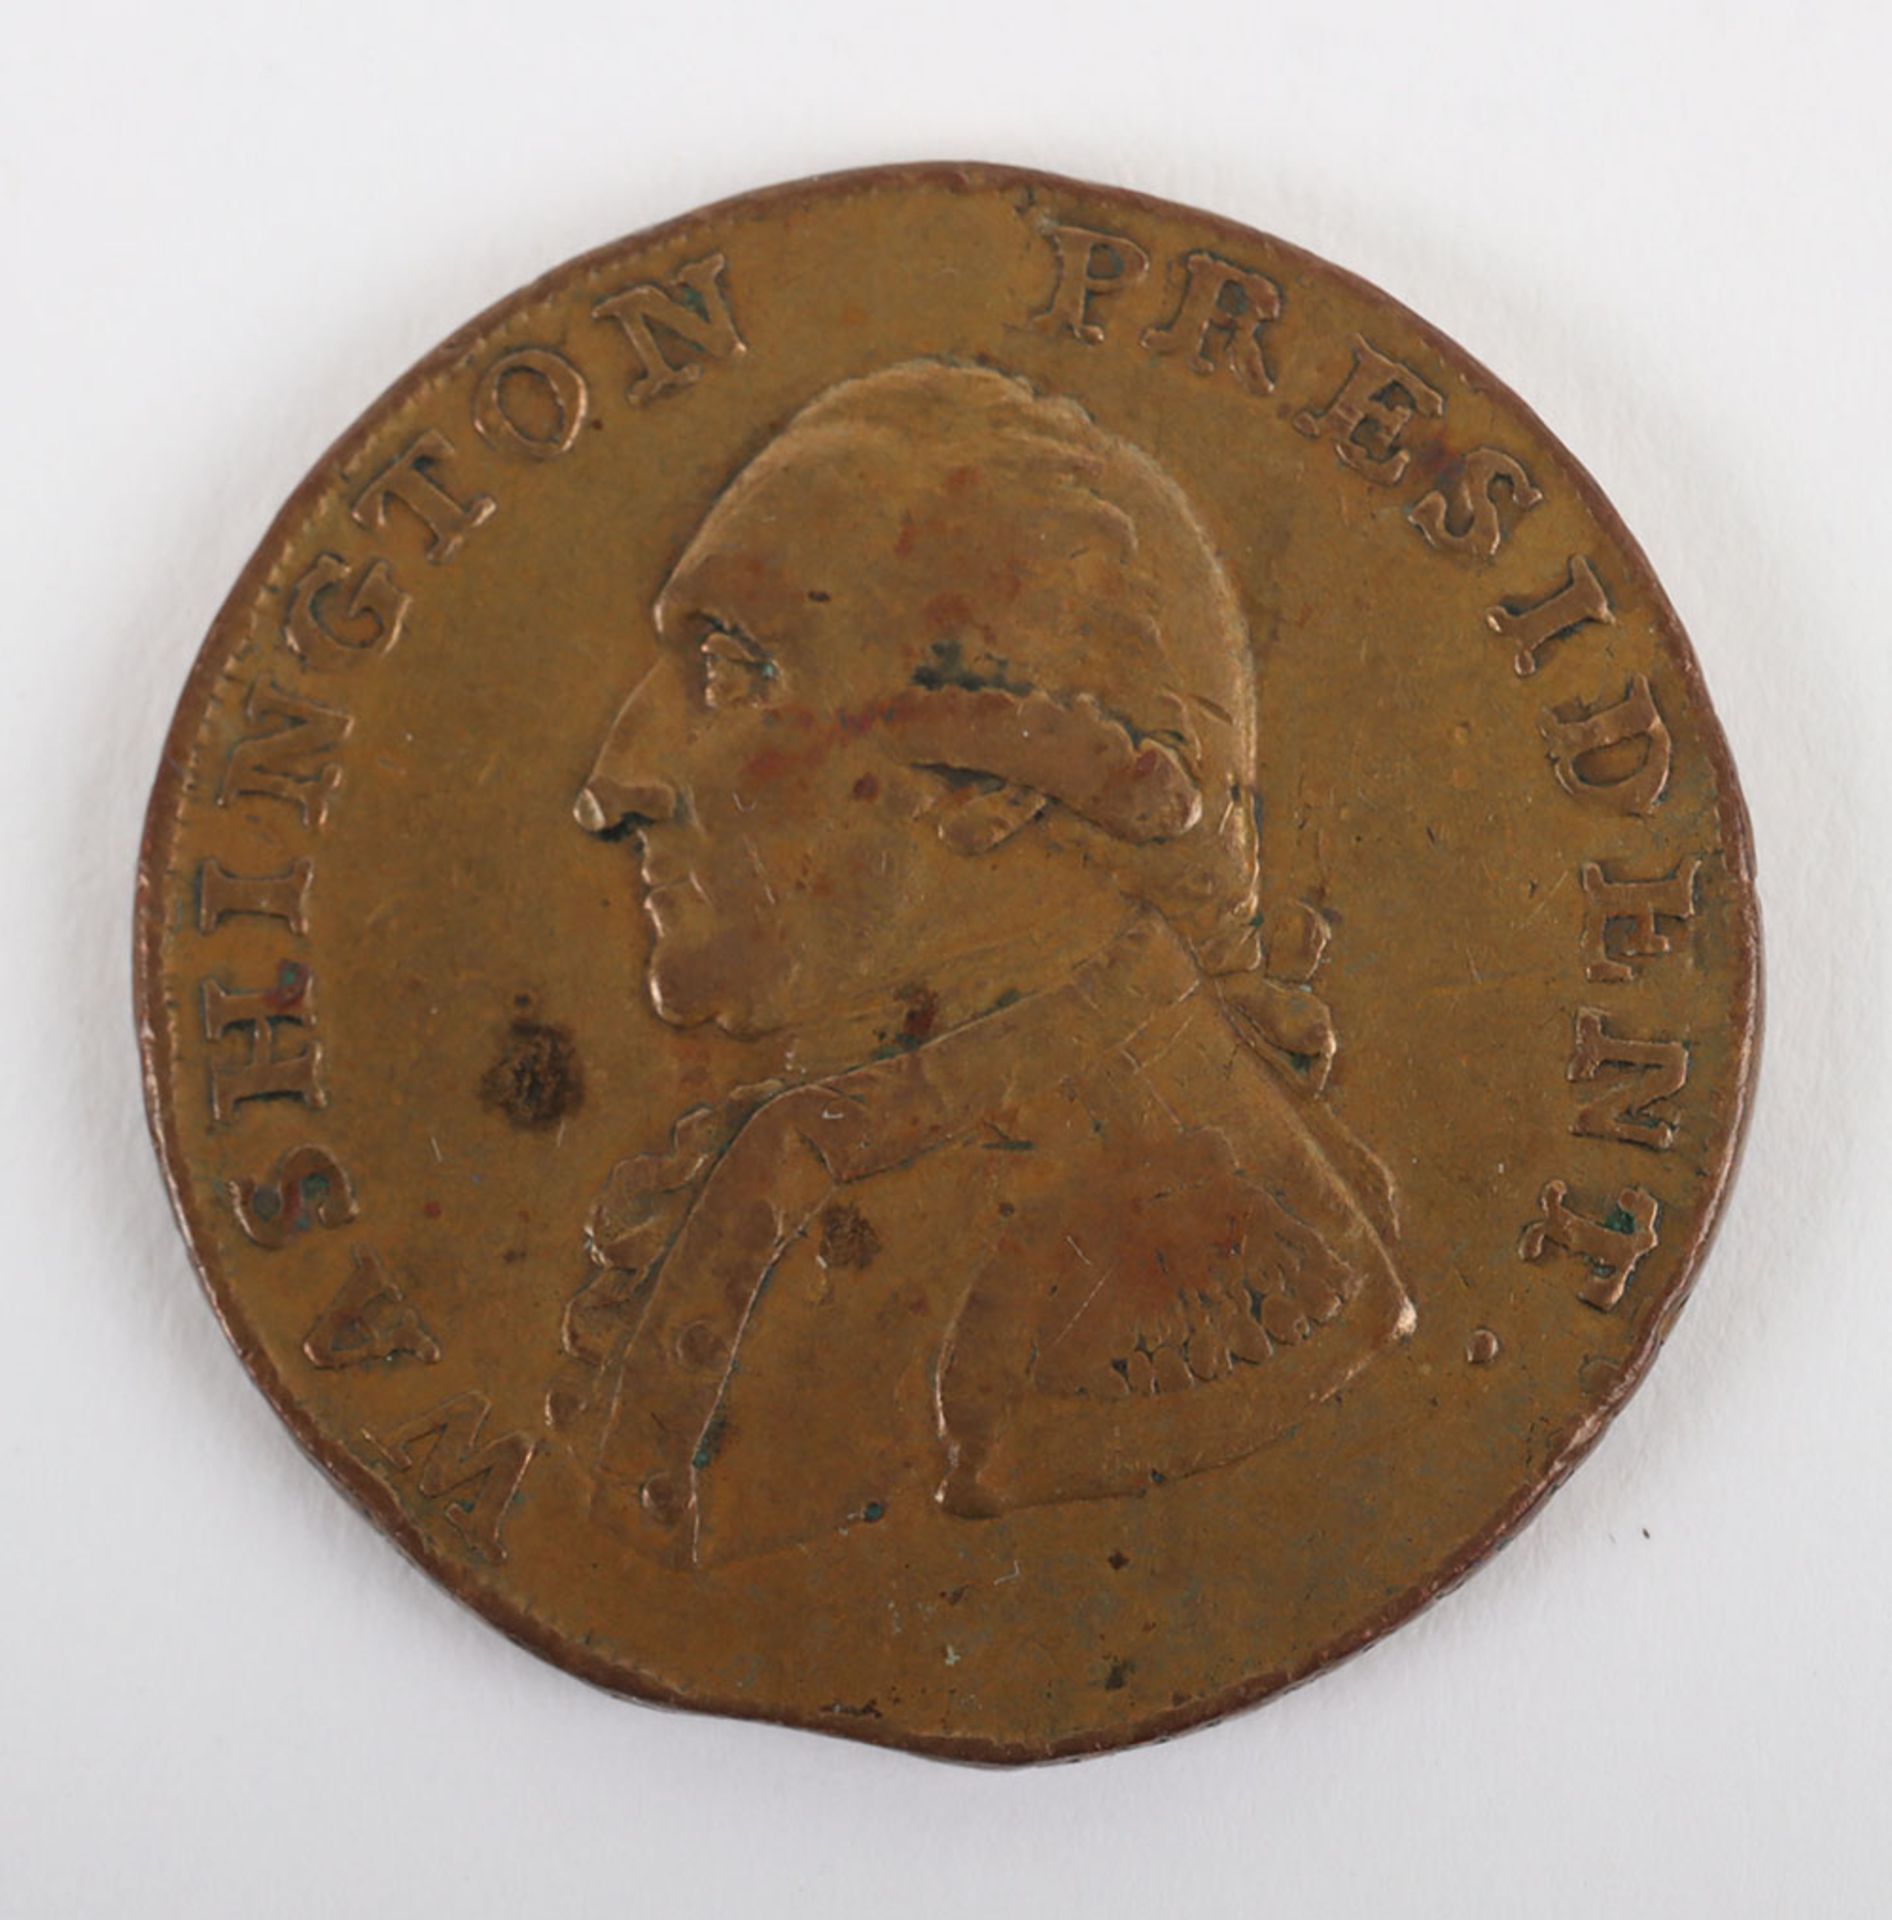 USA One Cent, 1791 Washington small eagle type, MACCLESFIELD edge